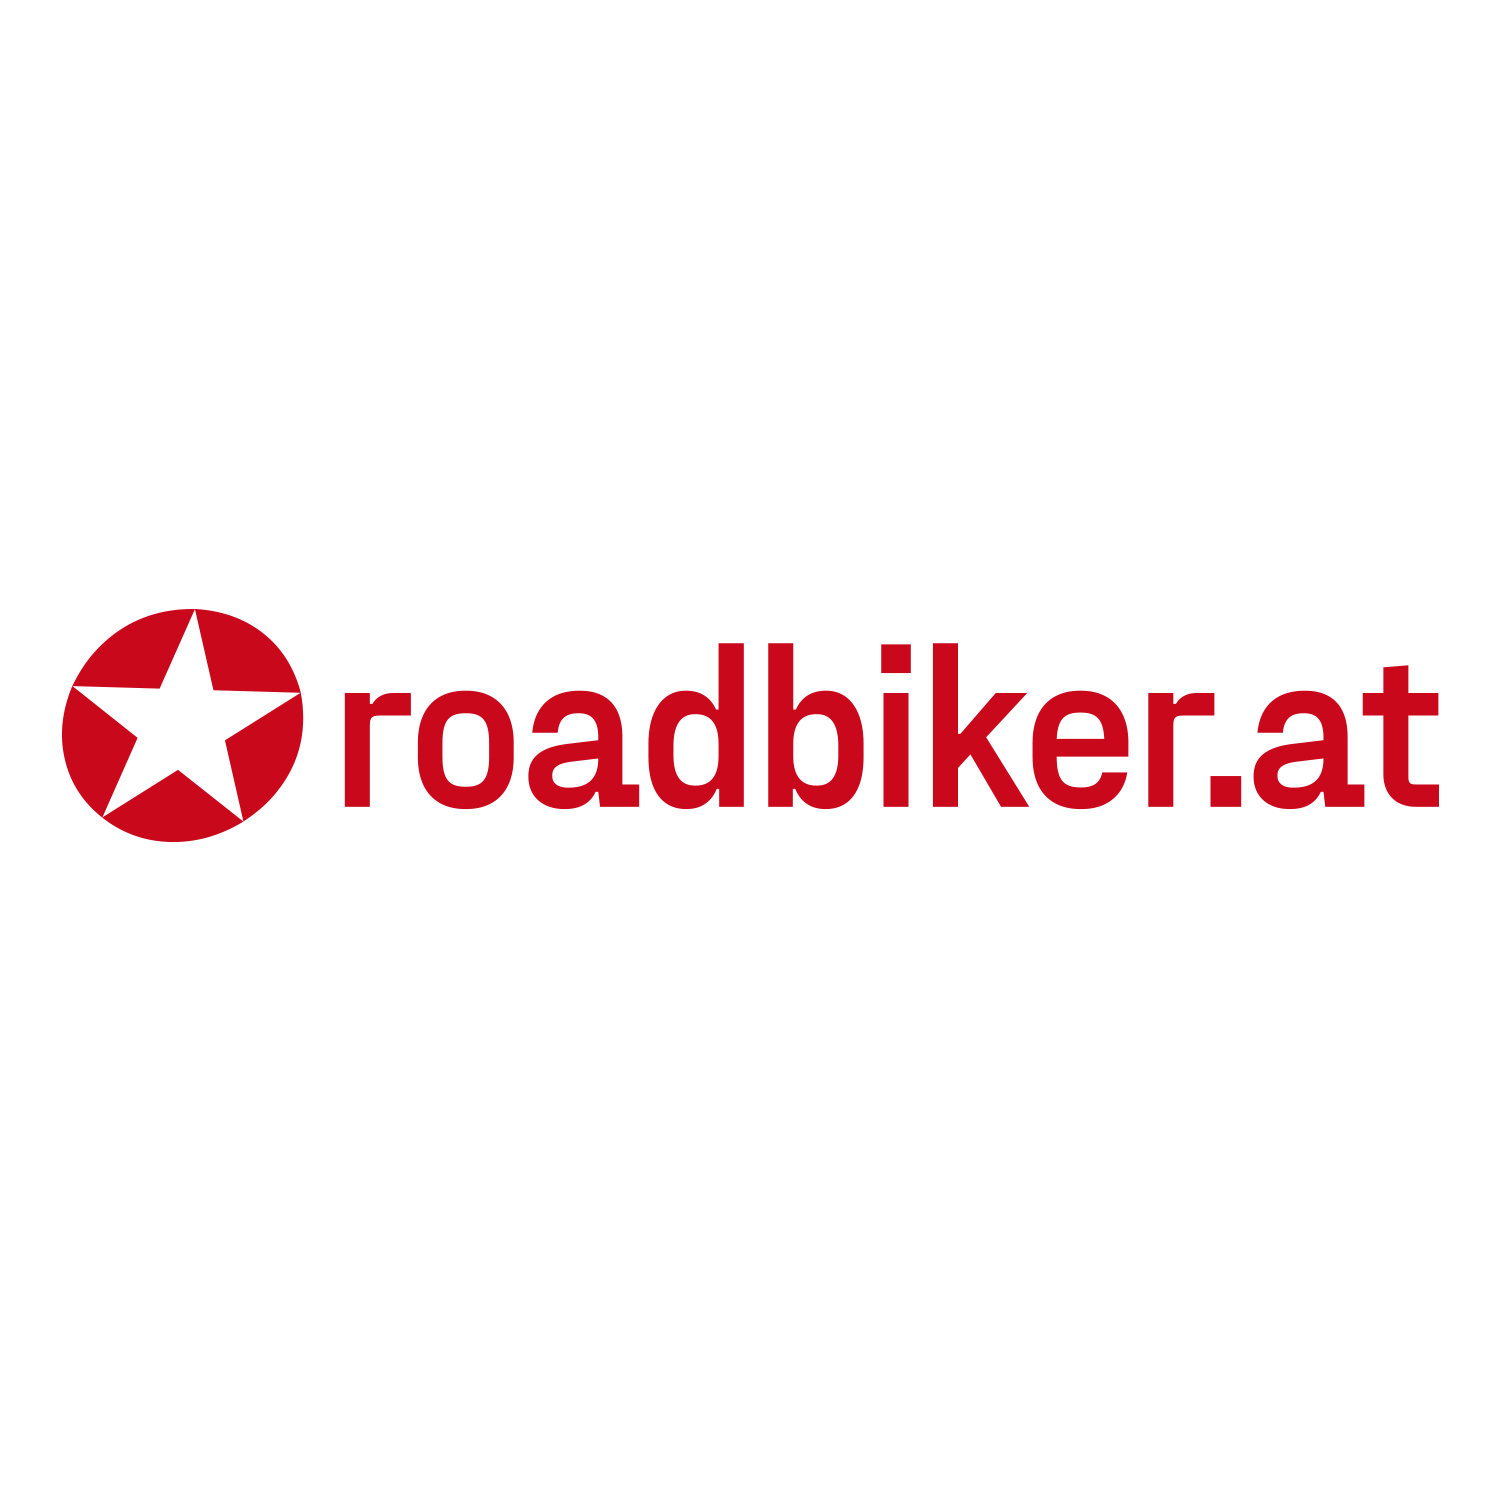 Roadbiker.at 1020 logo